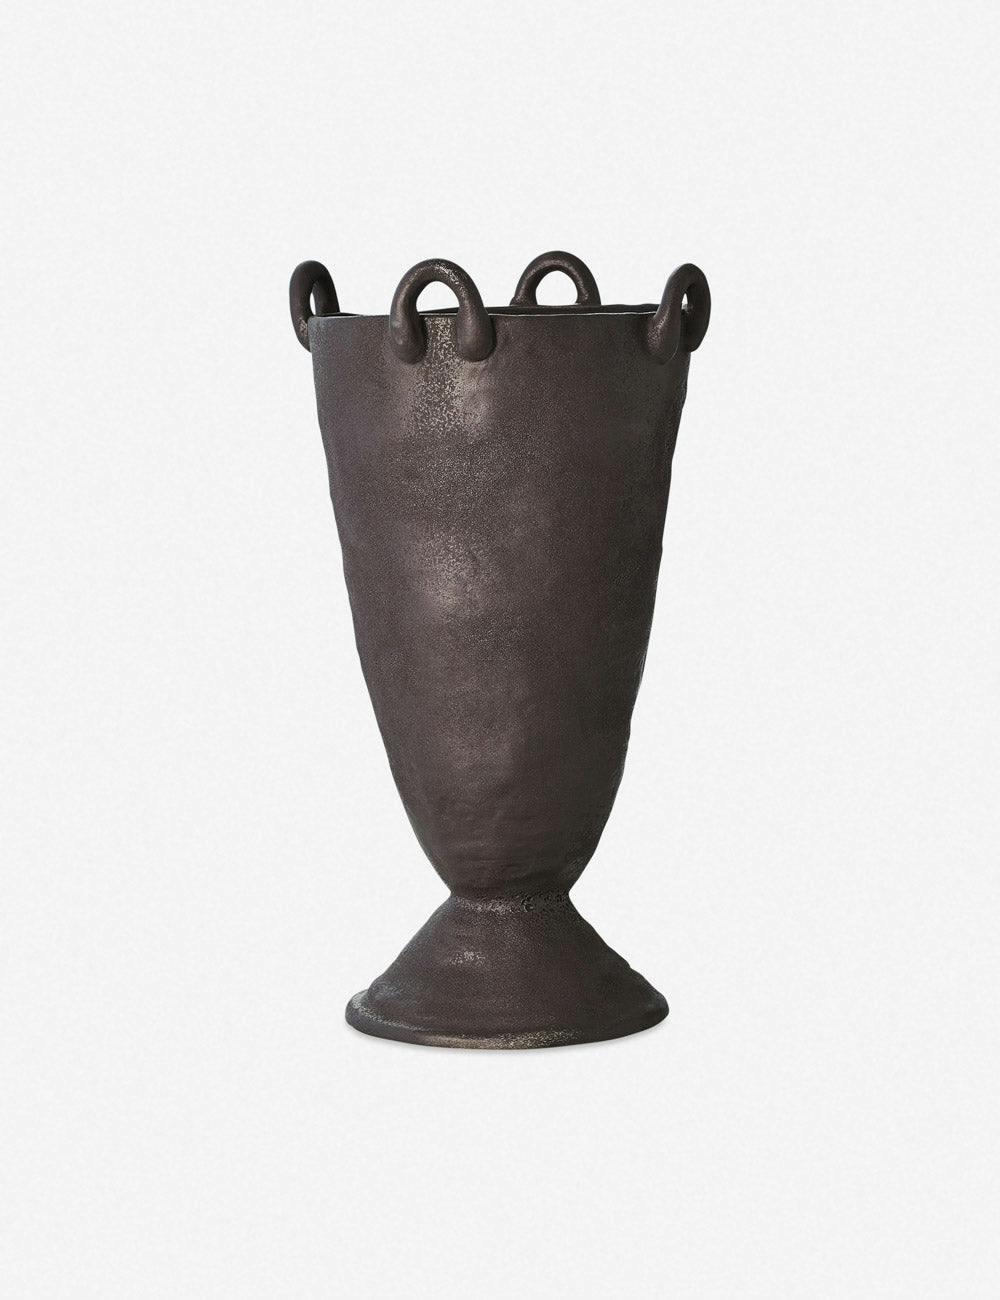 Louis Black Ceramic Decorative Vase